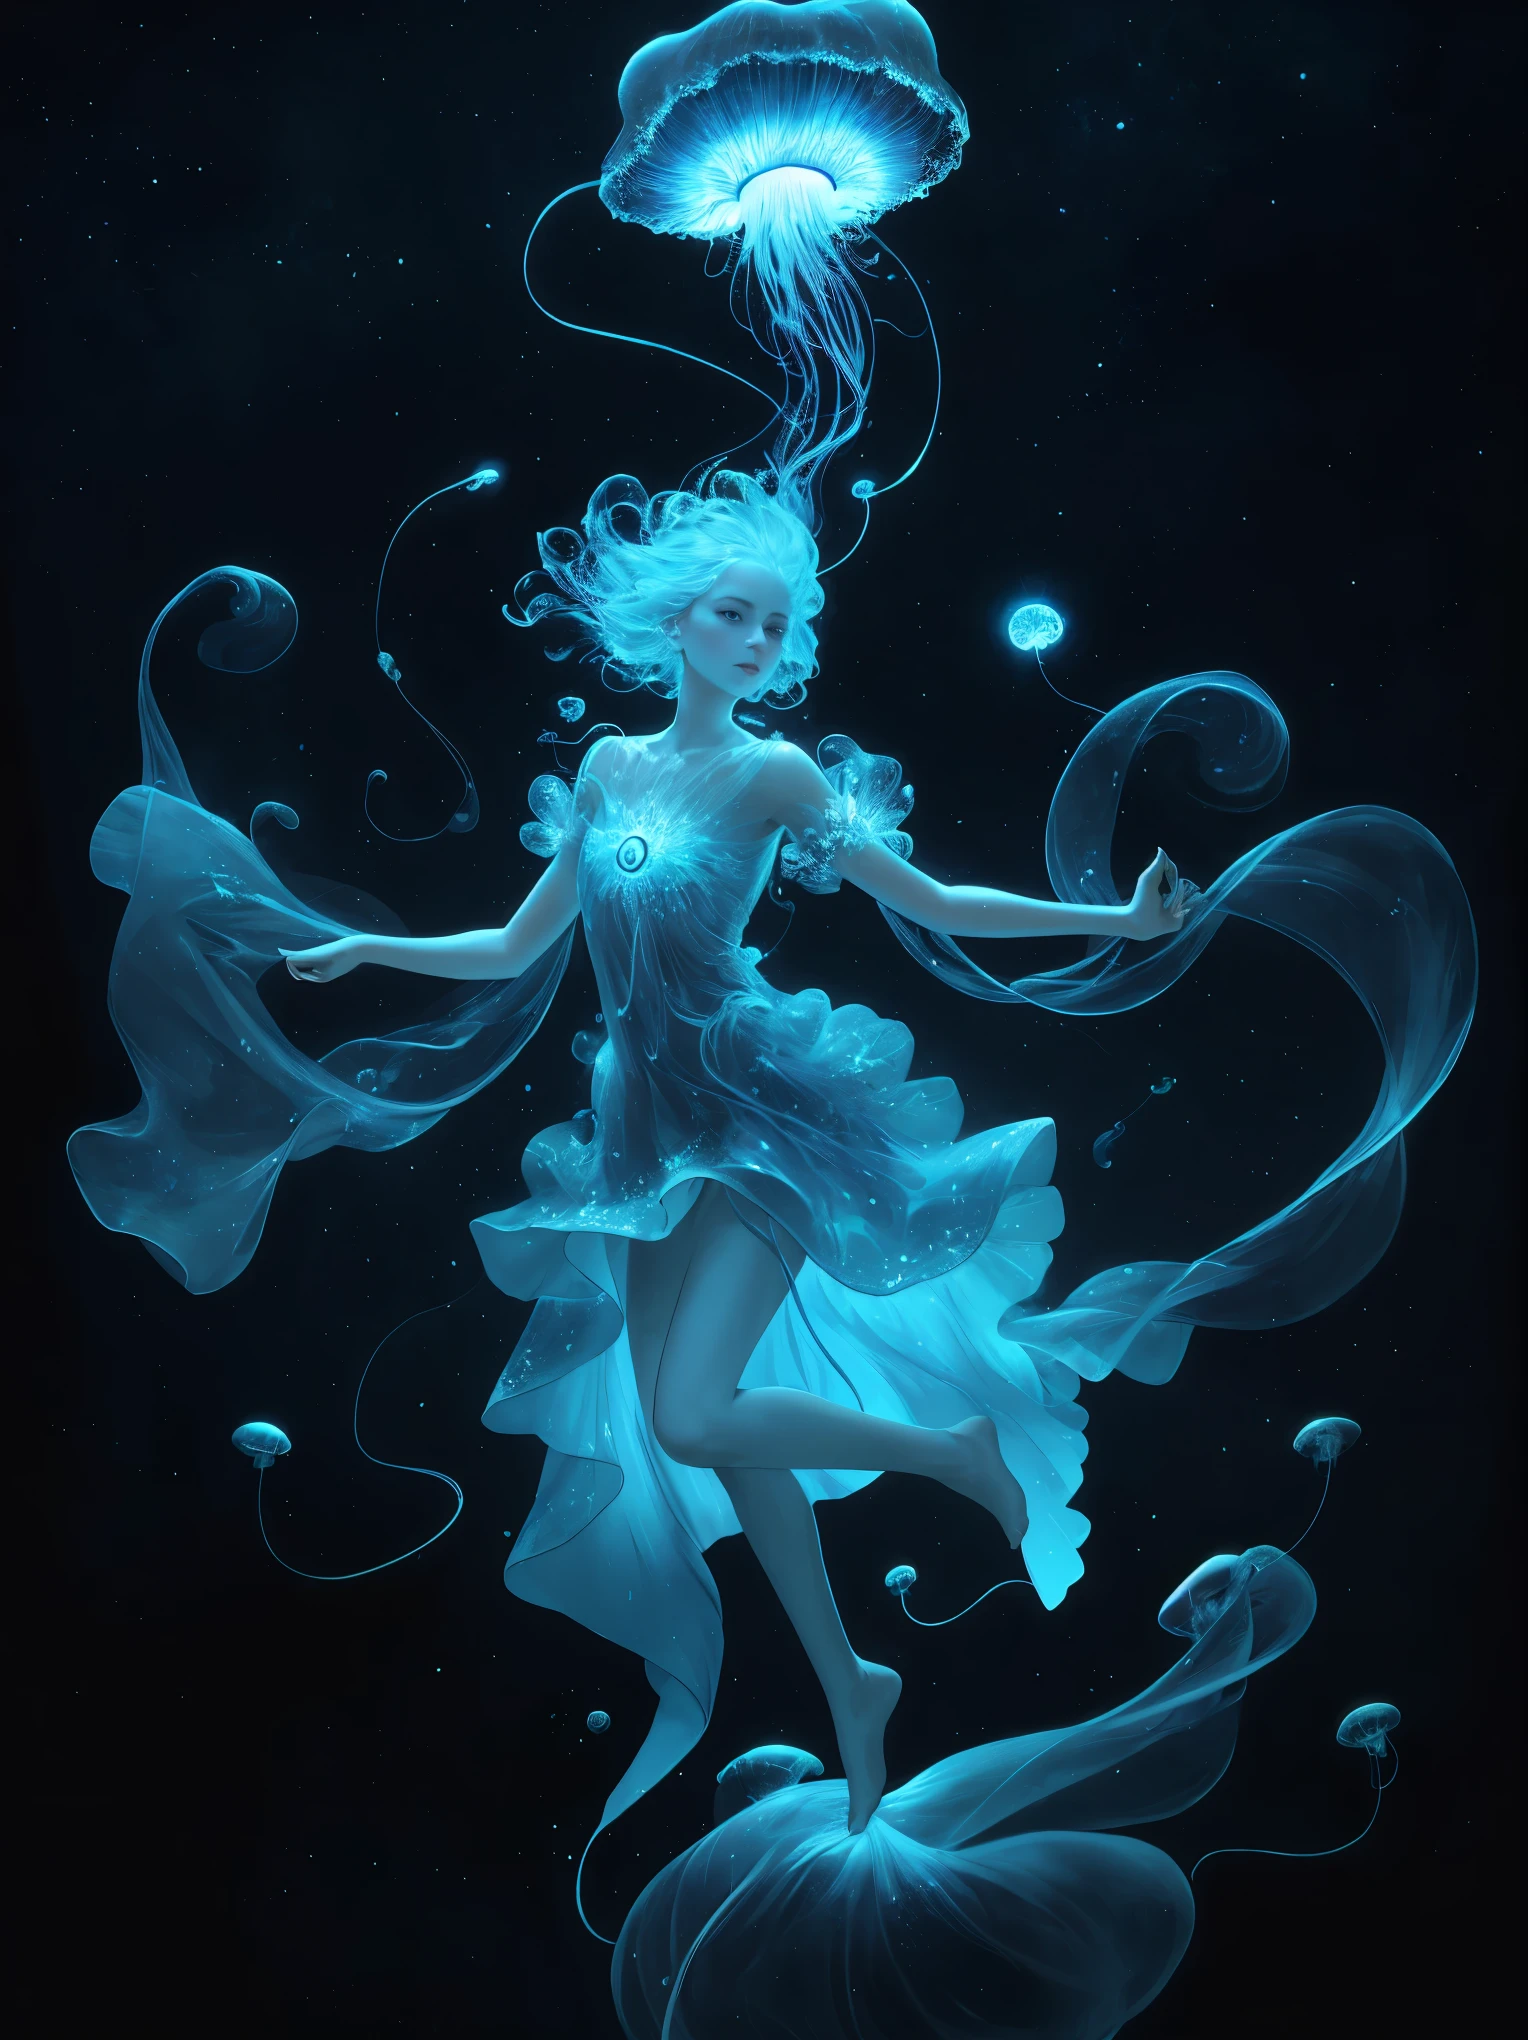 Une méduse céleste, flottant dans le cosmos avec des vrilles bioluminescentes qui créent une danse cosmique.